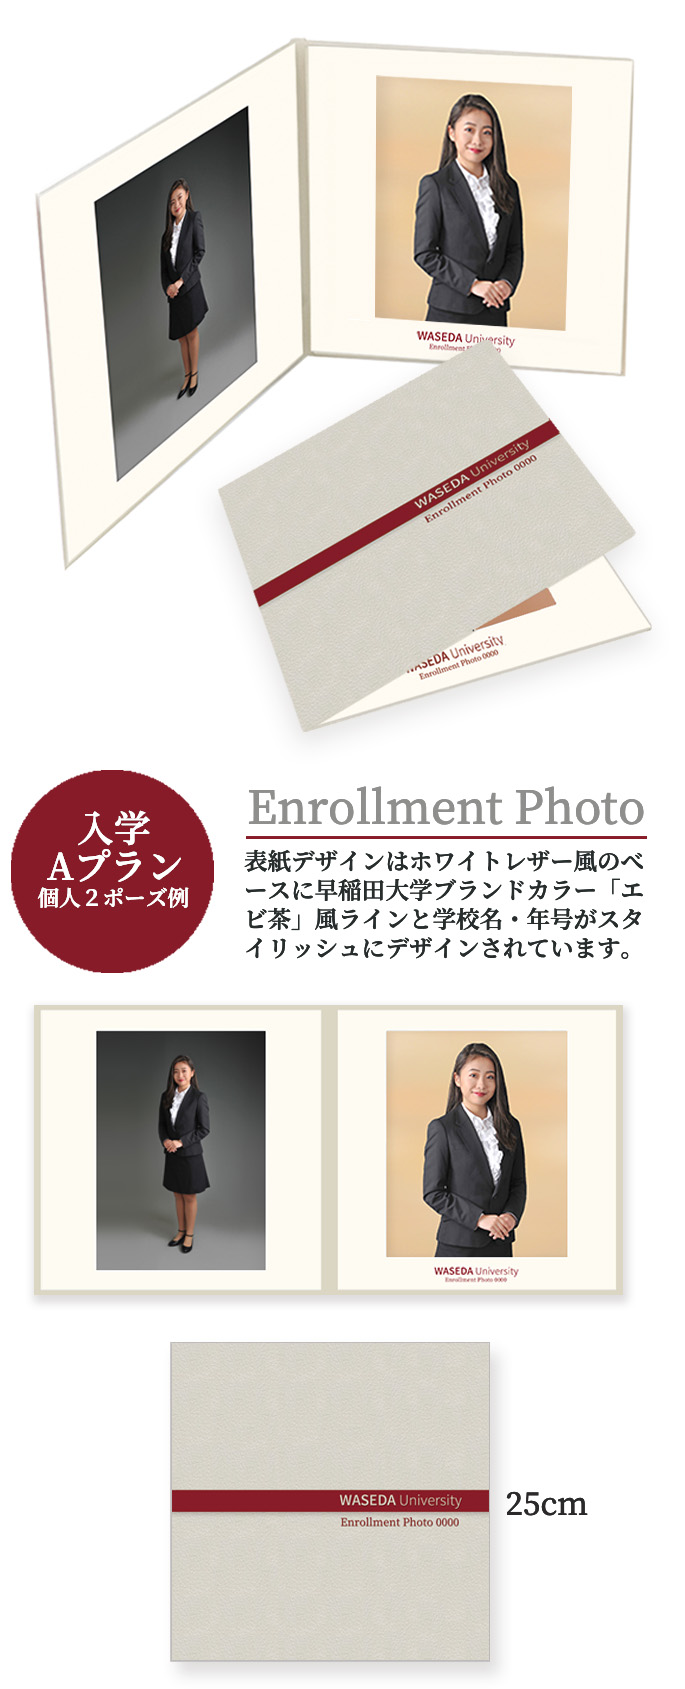 入学 Aプラン 個人＋家族例 Enrollment Photo 表紙デザインはホワイトレザー風のベースに早稲田大学ブランドカラー「エビ茶」風ラインと学校名・年号がスタイリッシュにデザインされています。